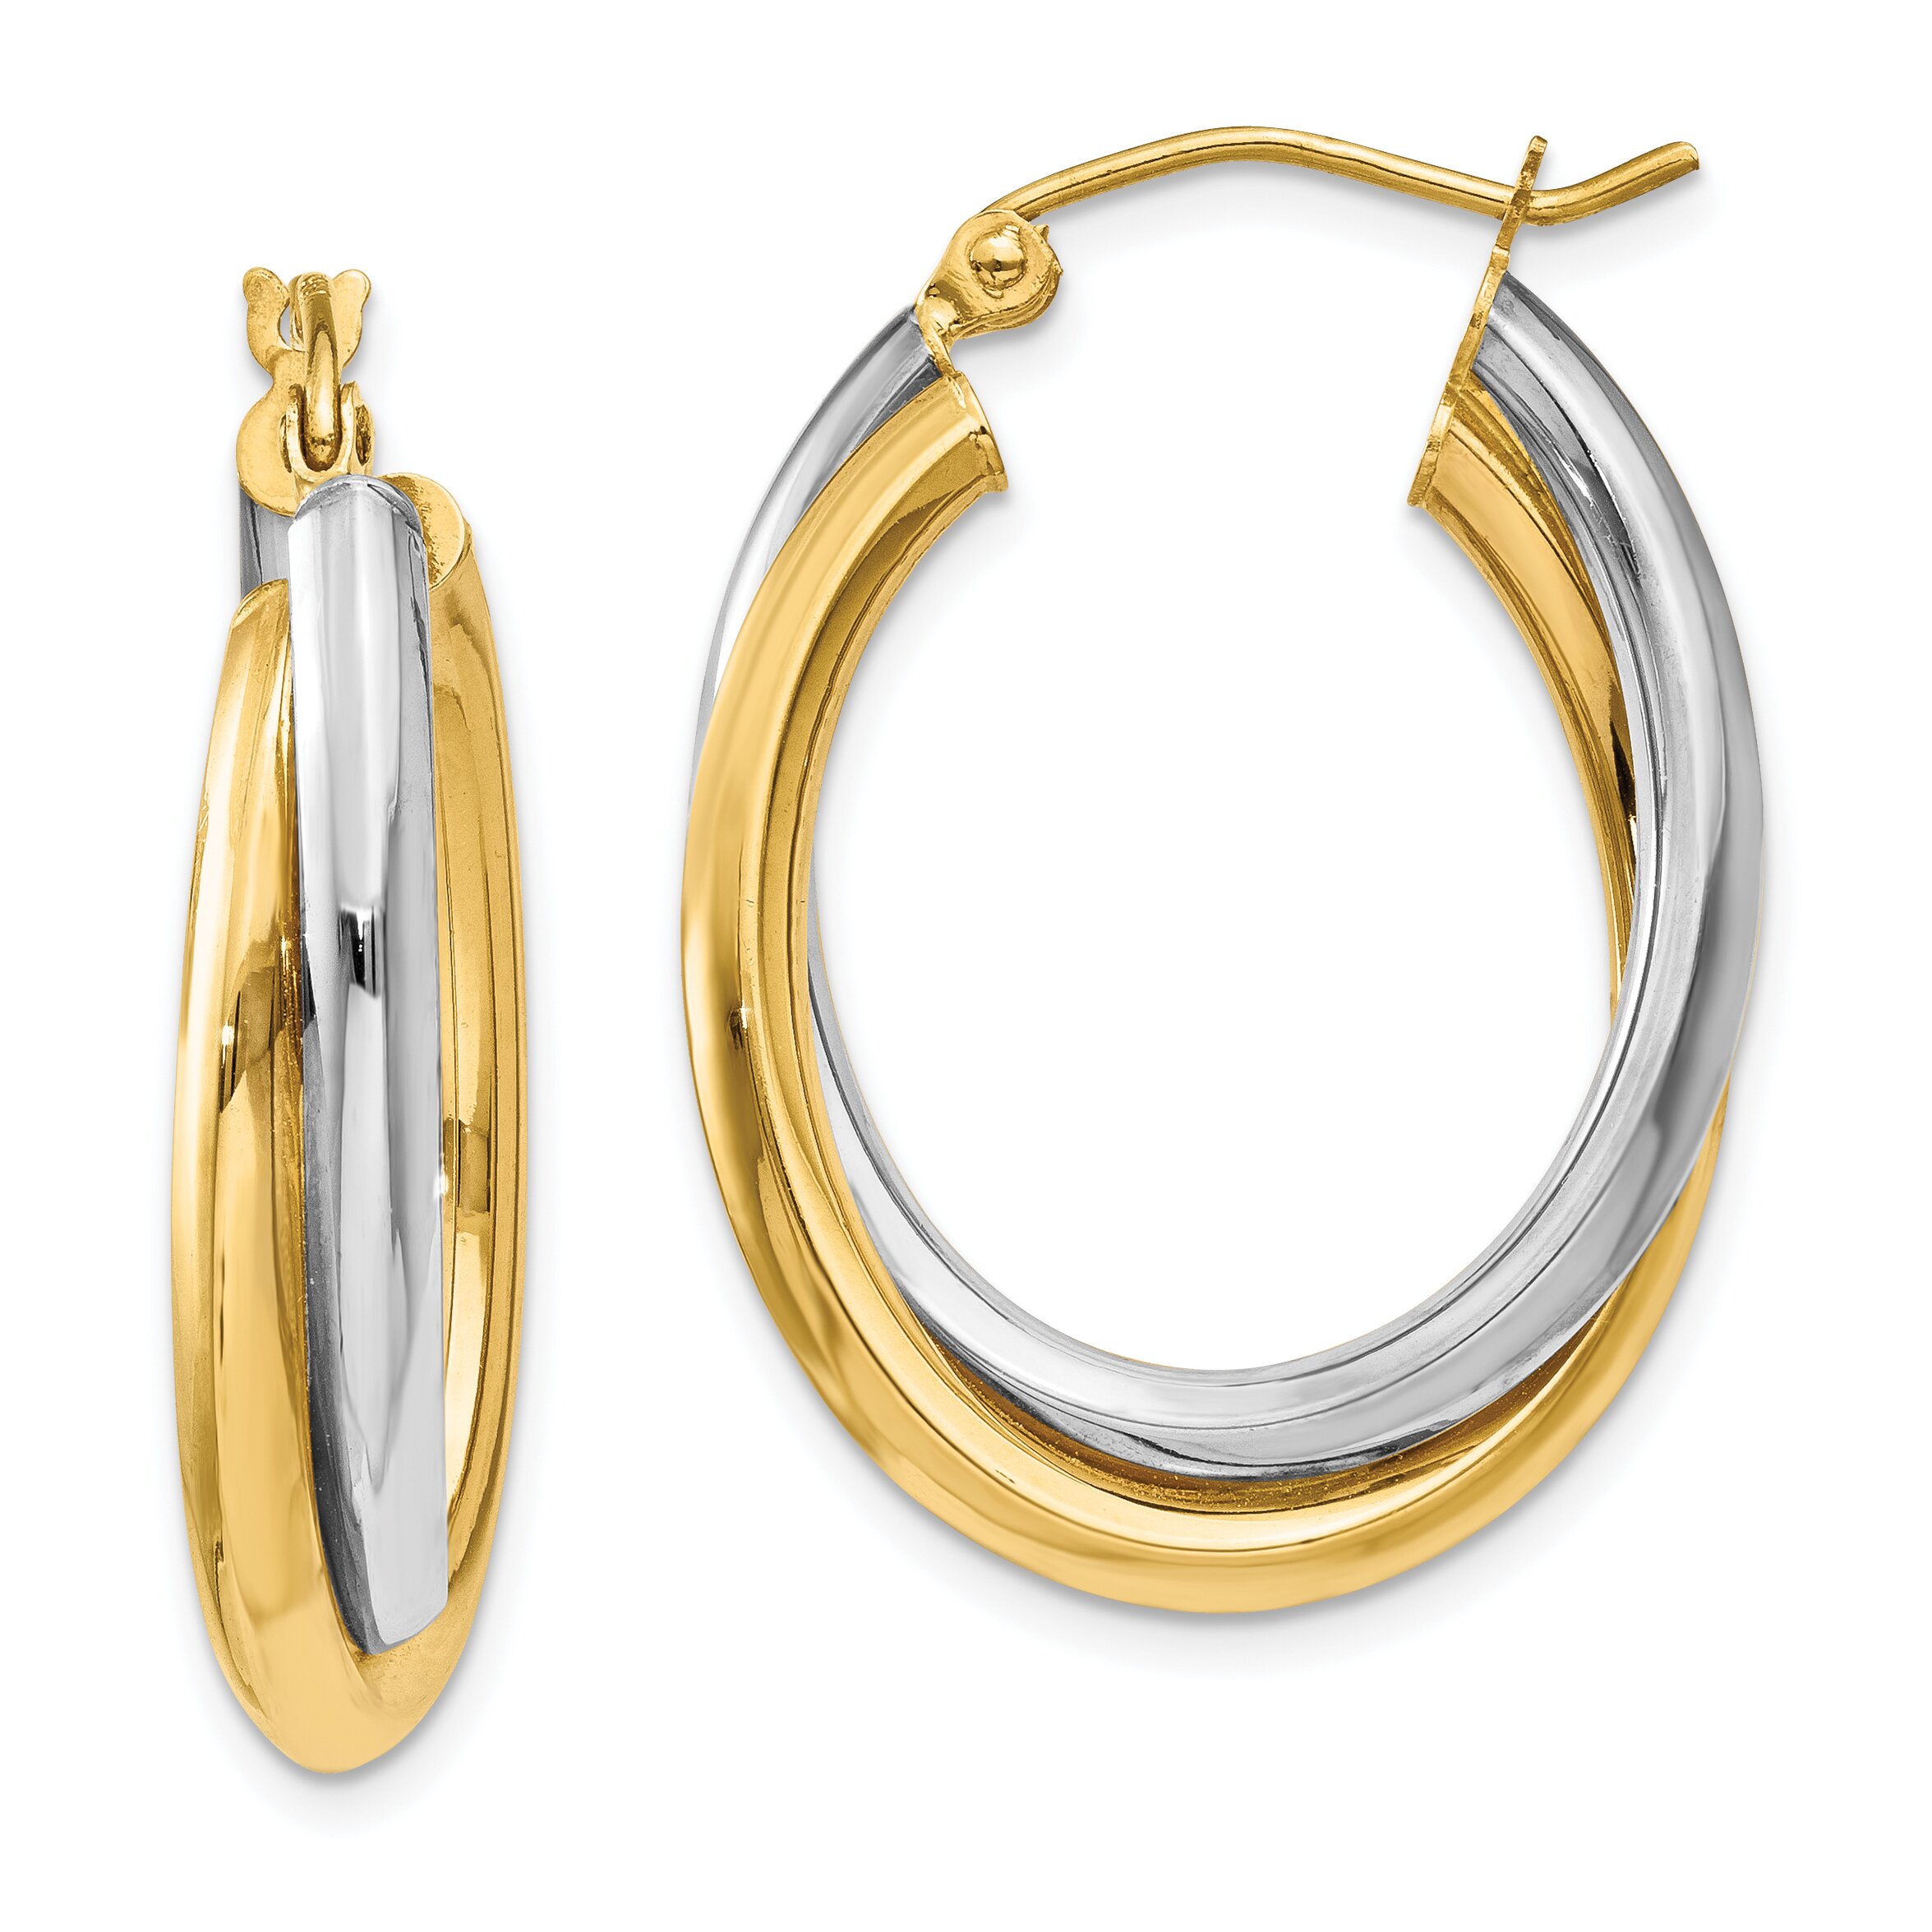 Findingking 14K Two Tone Gold Double Oval Hoop Earrings Jewelry